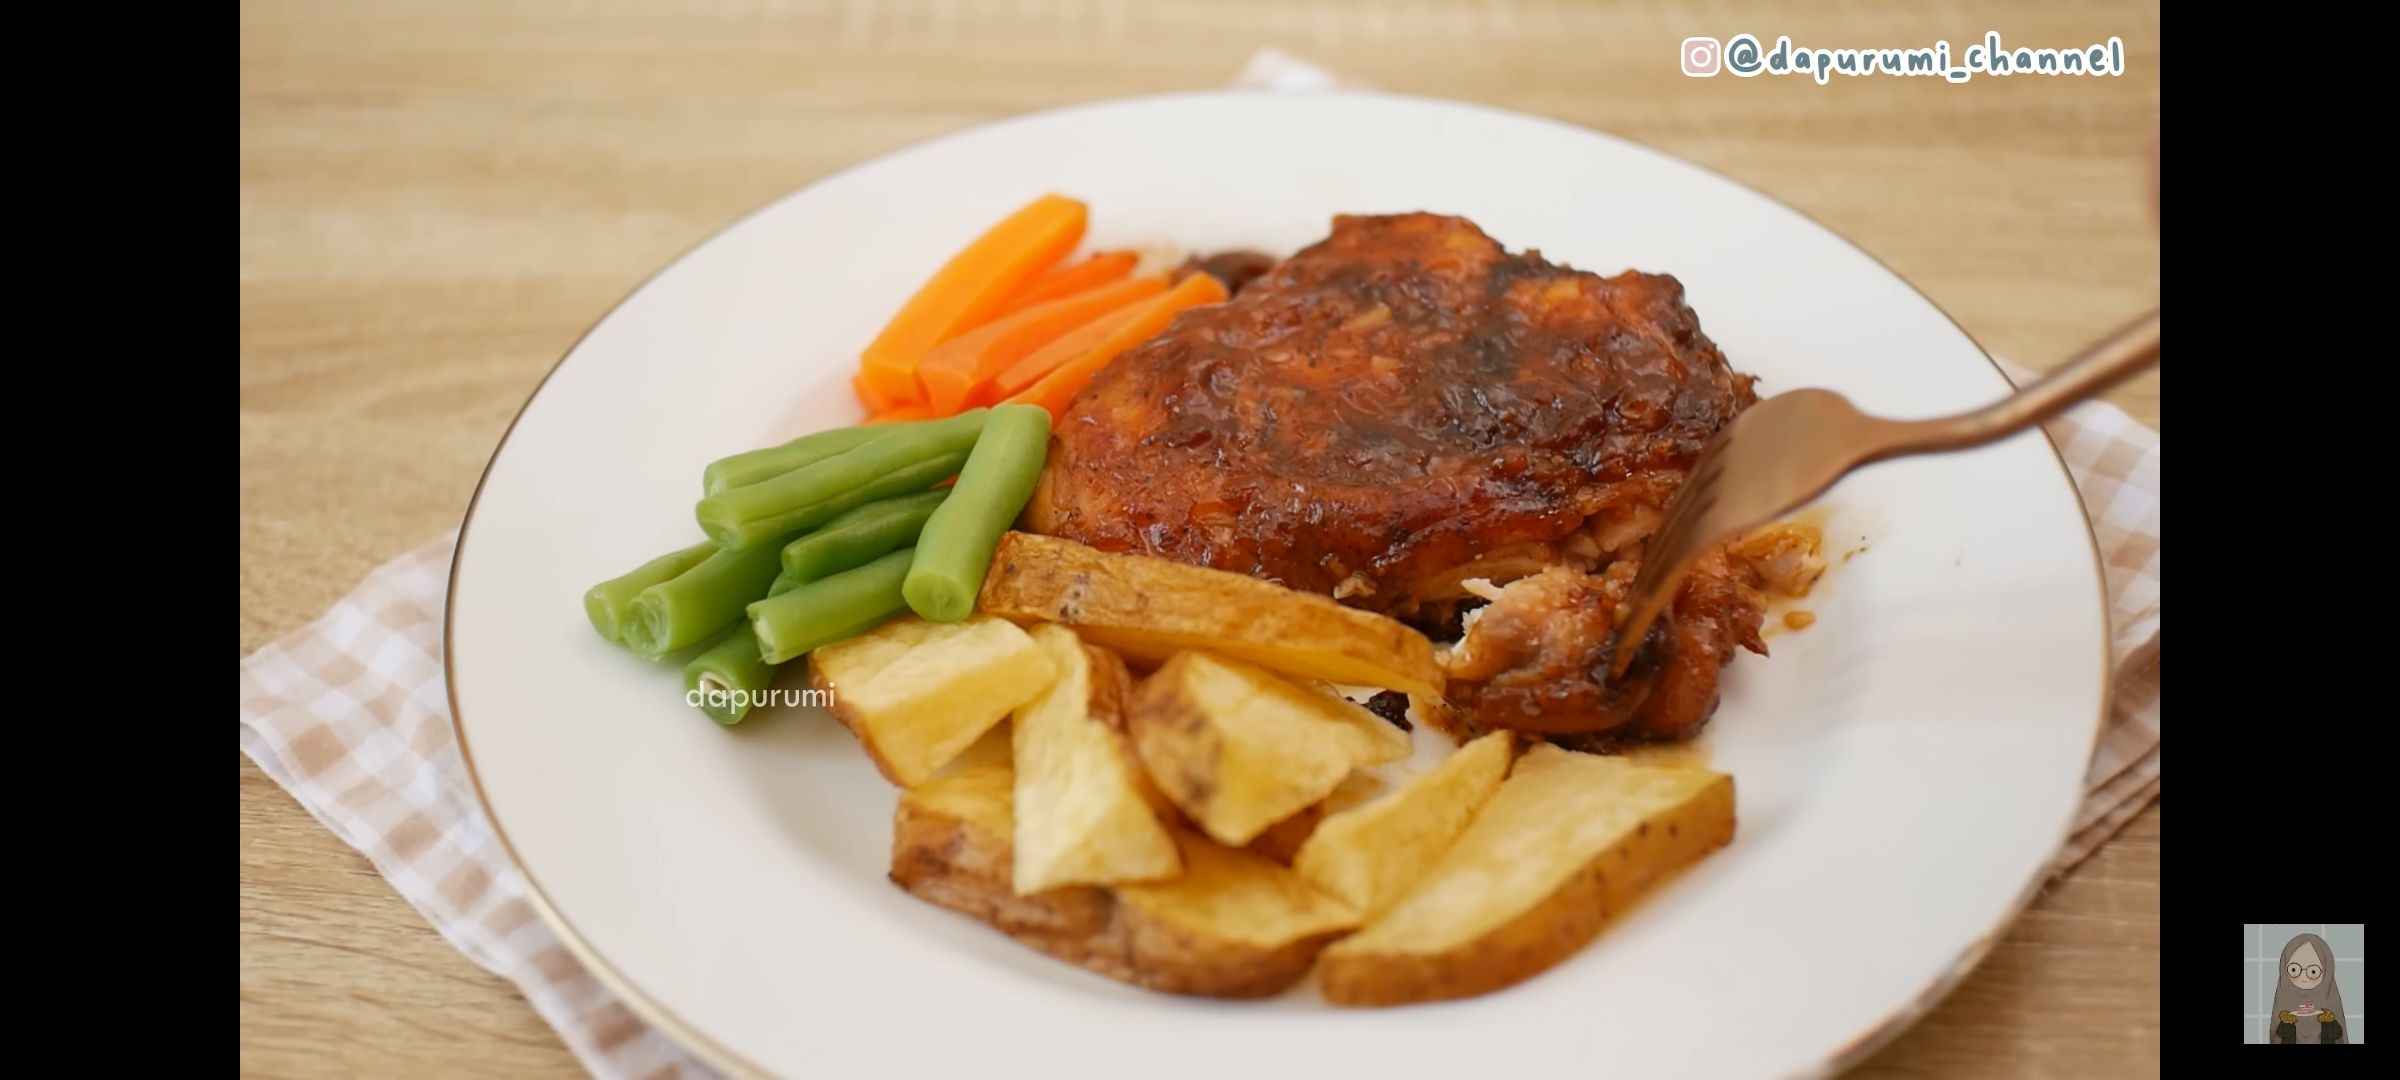 Sedang viral, resep steak ayam BBQ yang enak dan mudah dibuat di rumah.